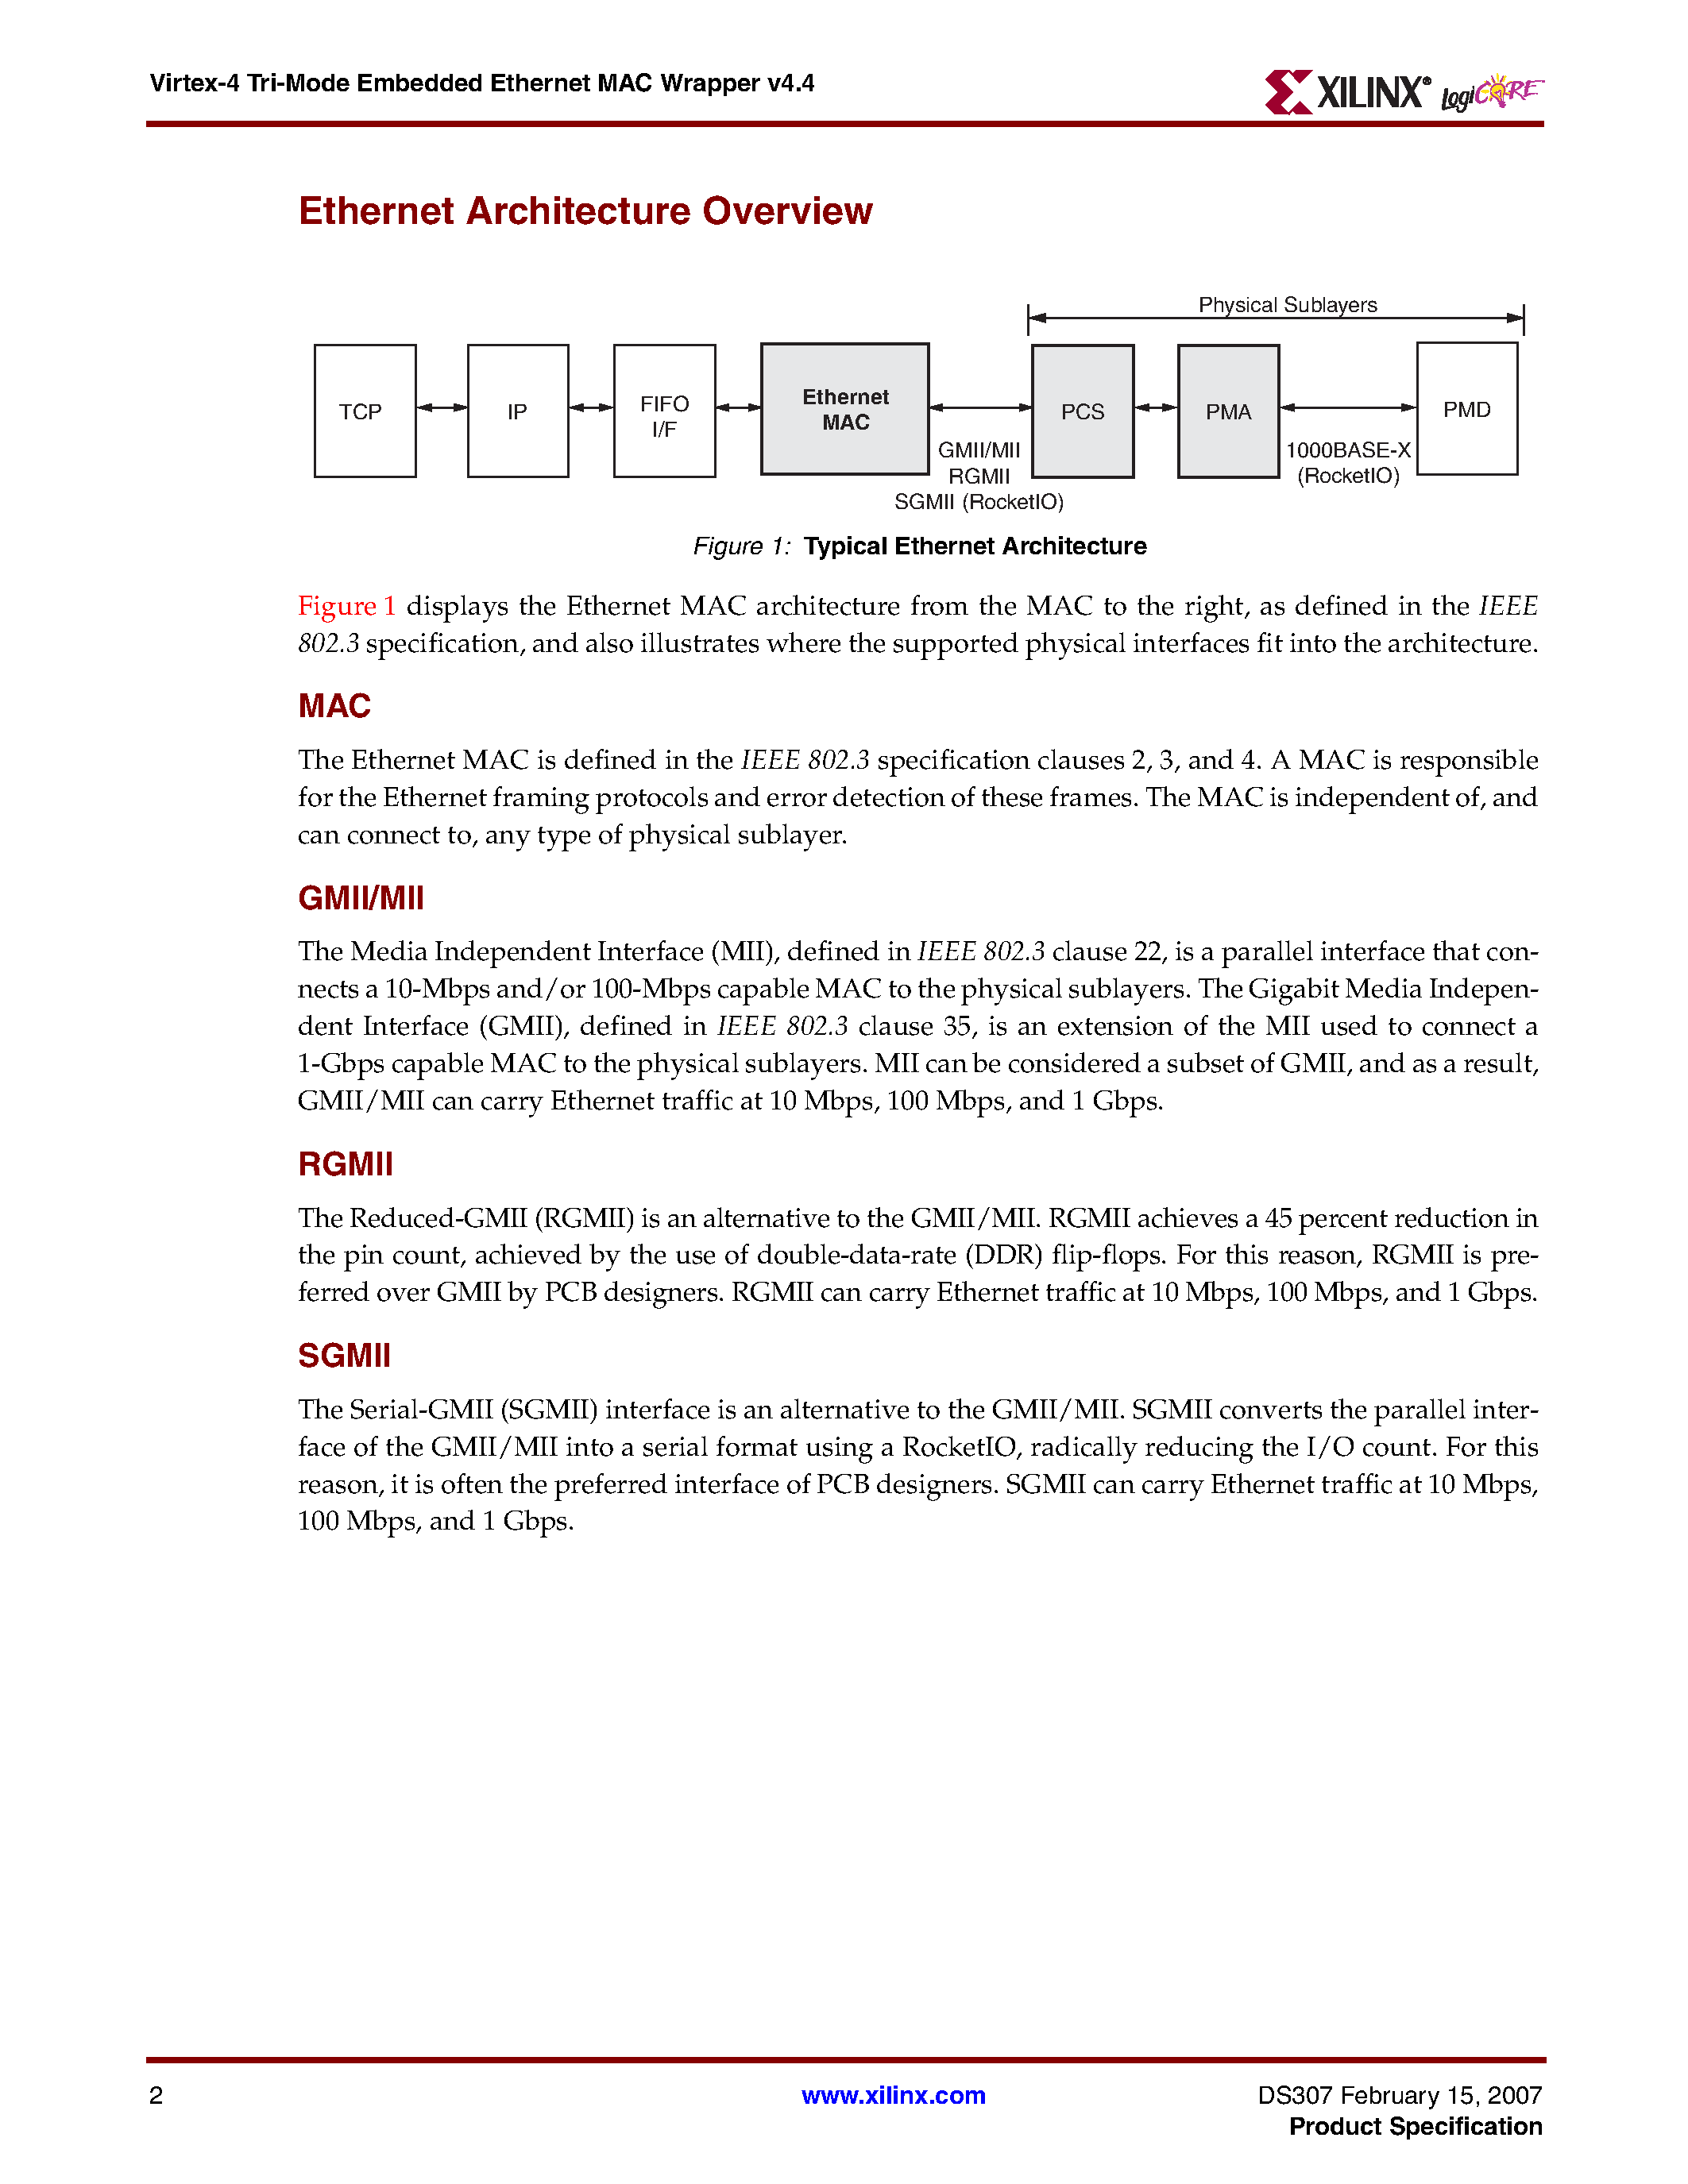 Даташит VIRTEX-4-Tri-Mode Embedded Ethernet MAC Wrapper v4.4 страница 2